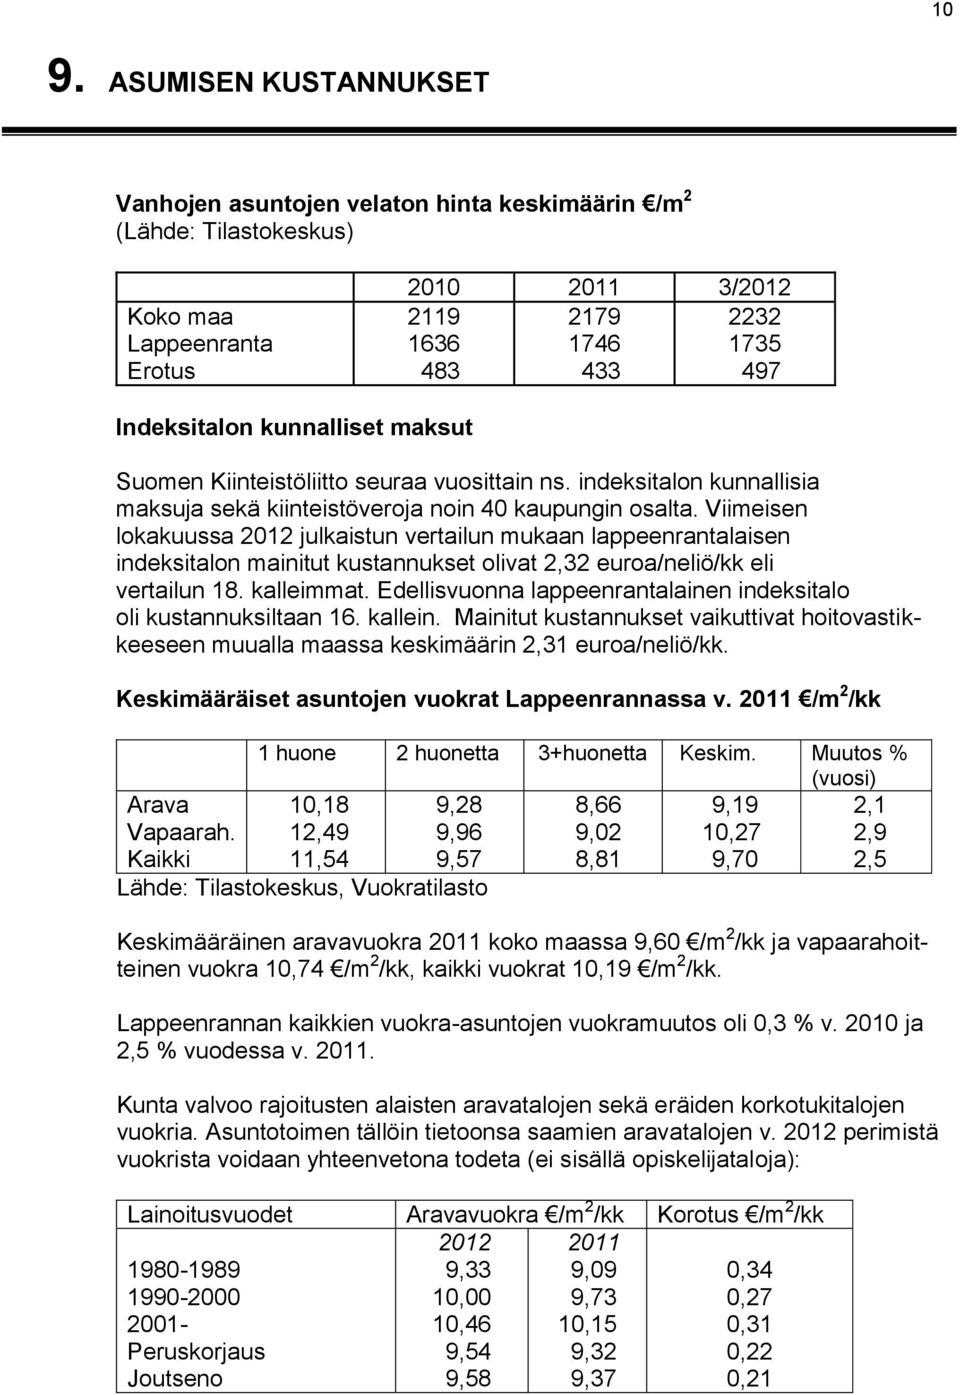 Viimeisen lokakuussa 2012 julkaistun vertailun mukaan lappeenrantalaisen indeksitalon mainitut kustannukset olivat 2,32 euroa/neliö/kk eli vertailun 18. kalleimmat.